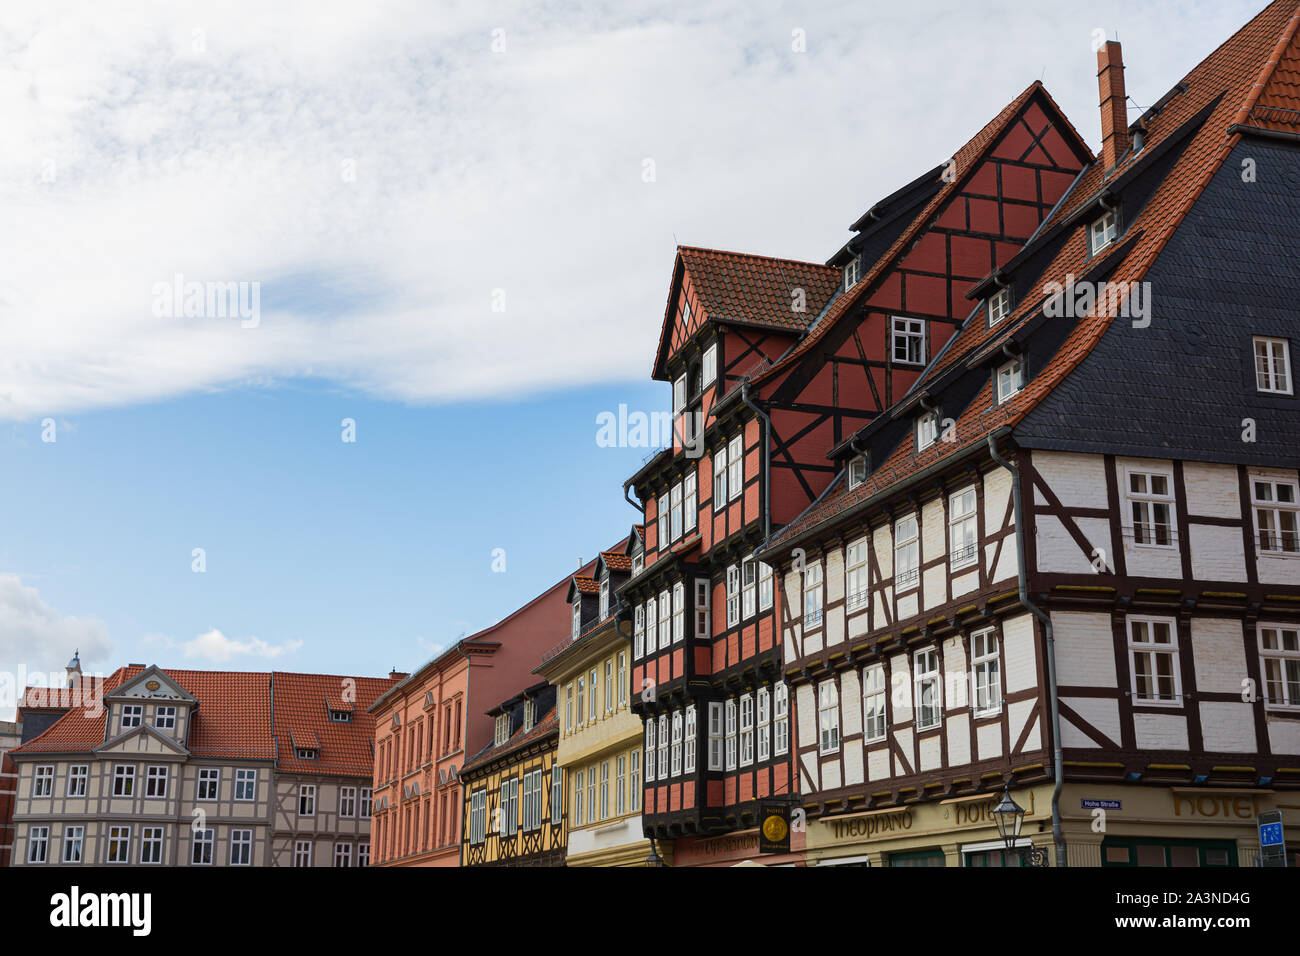 Quedlinburg ist in Europa einer der am besten erhaltenen mittelalterlichen Städte der Renaissance. Es verfügt über eine seltene Kombination aus alten und modernen historischen Schätze. Ein Stockfoto